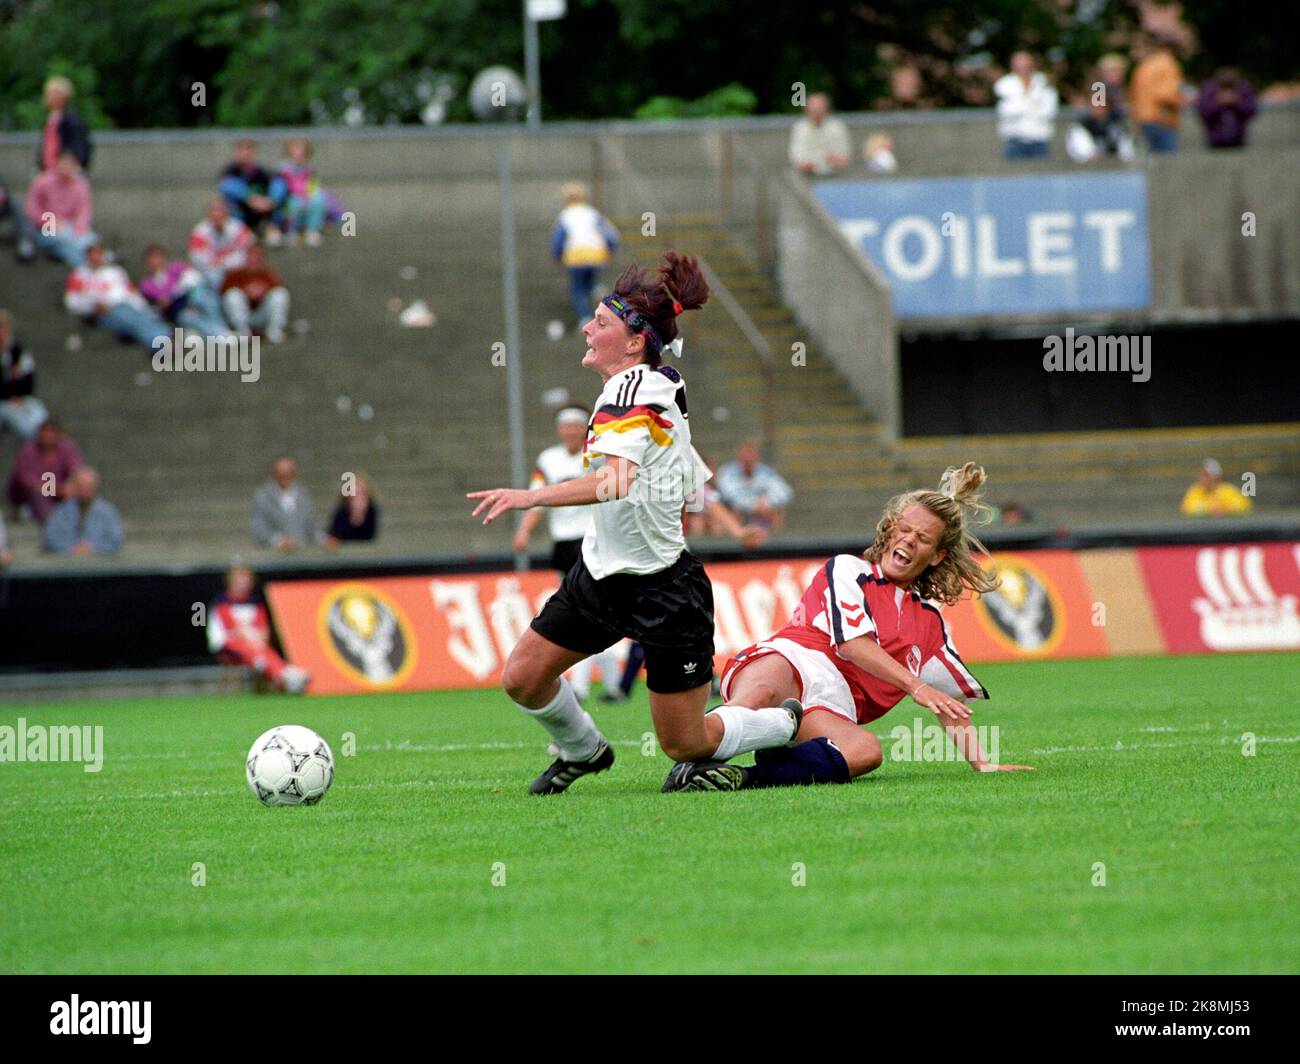 Aalborg, Danemark 19910714 Championnat d'Europe de football pour femmes à Ålborg. La finale a été remportée par l'Allemagne. Norvège-Allemagne 1-3. Agnete Carlsen en action. Photo: Agnete Brun / NTB Banque D'Images